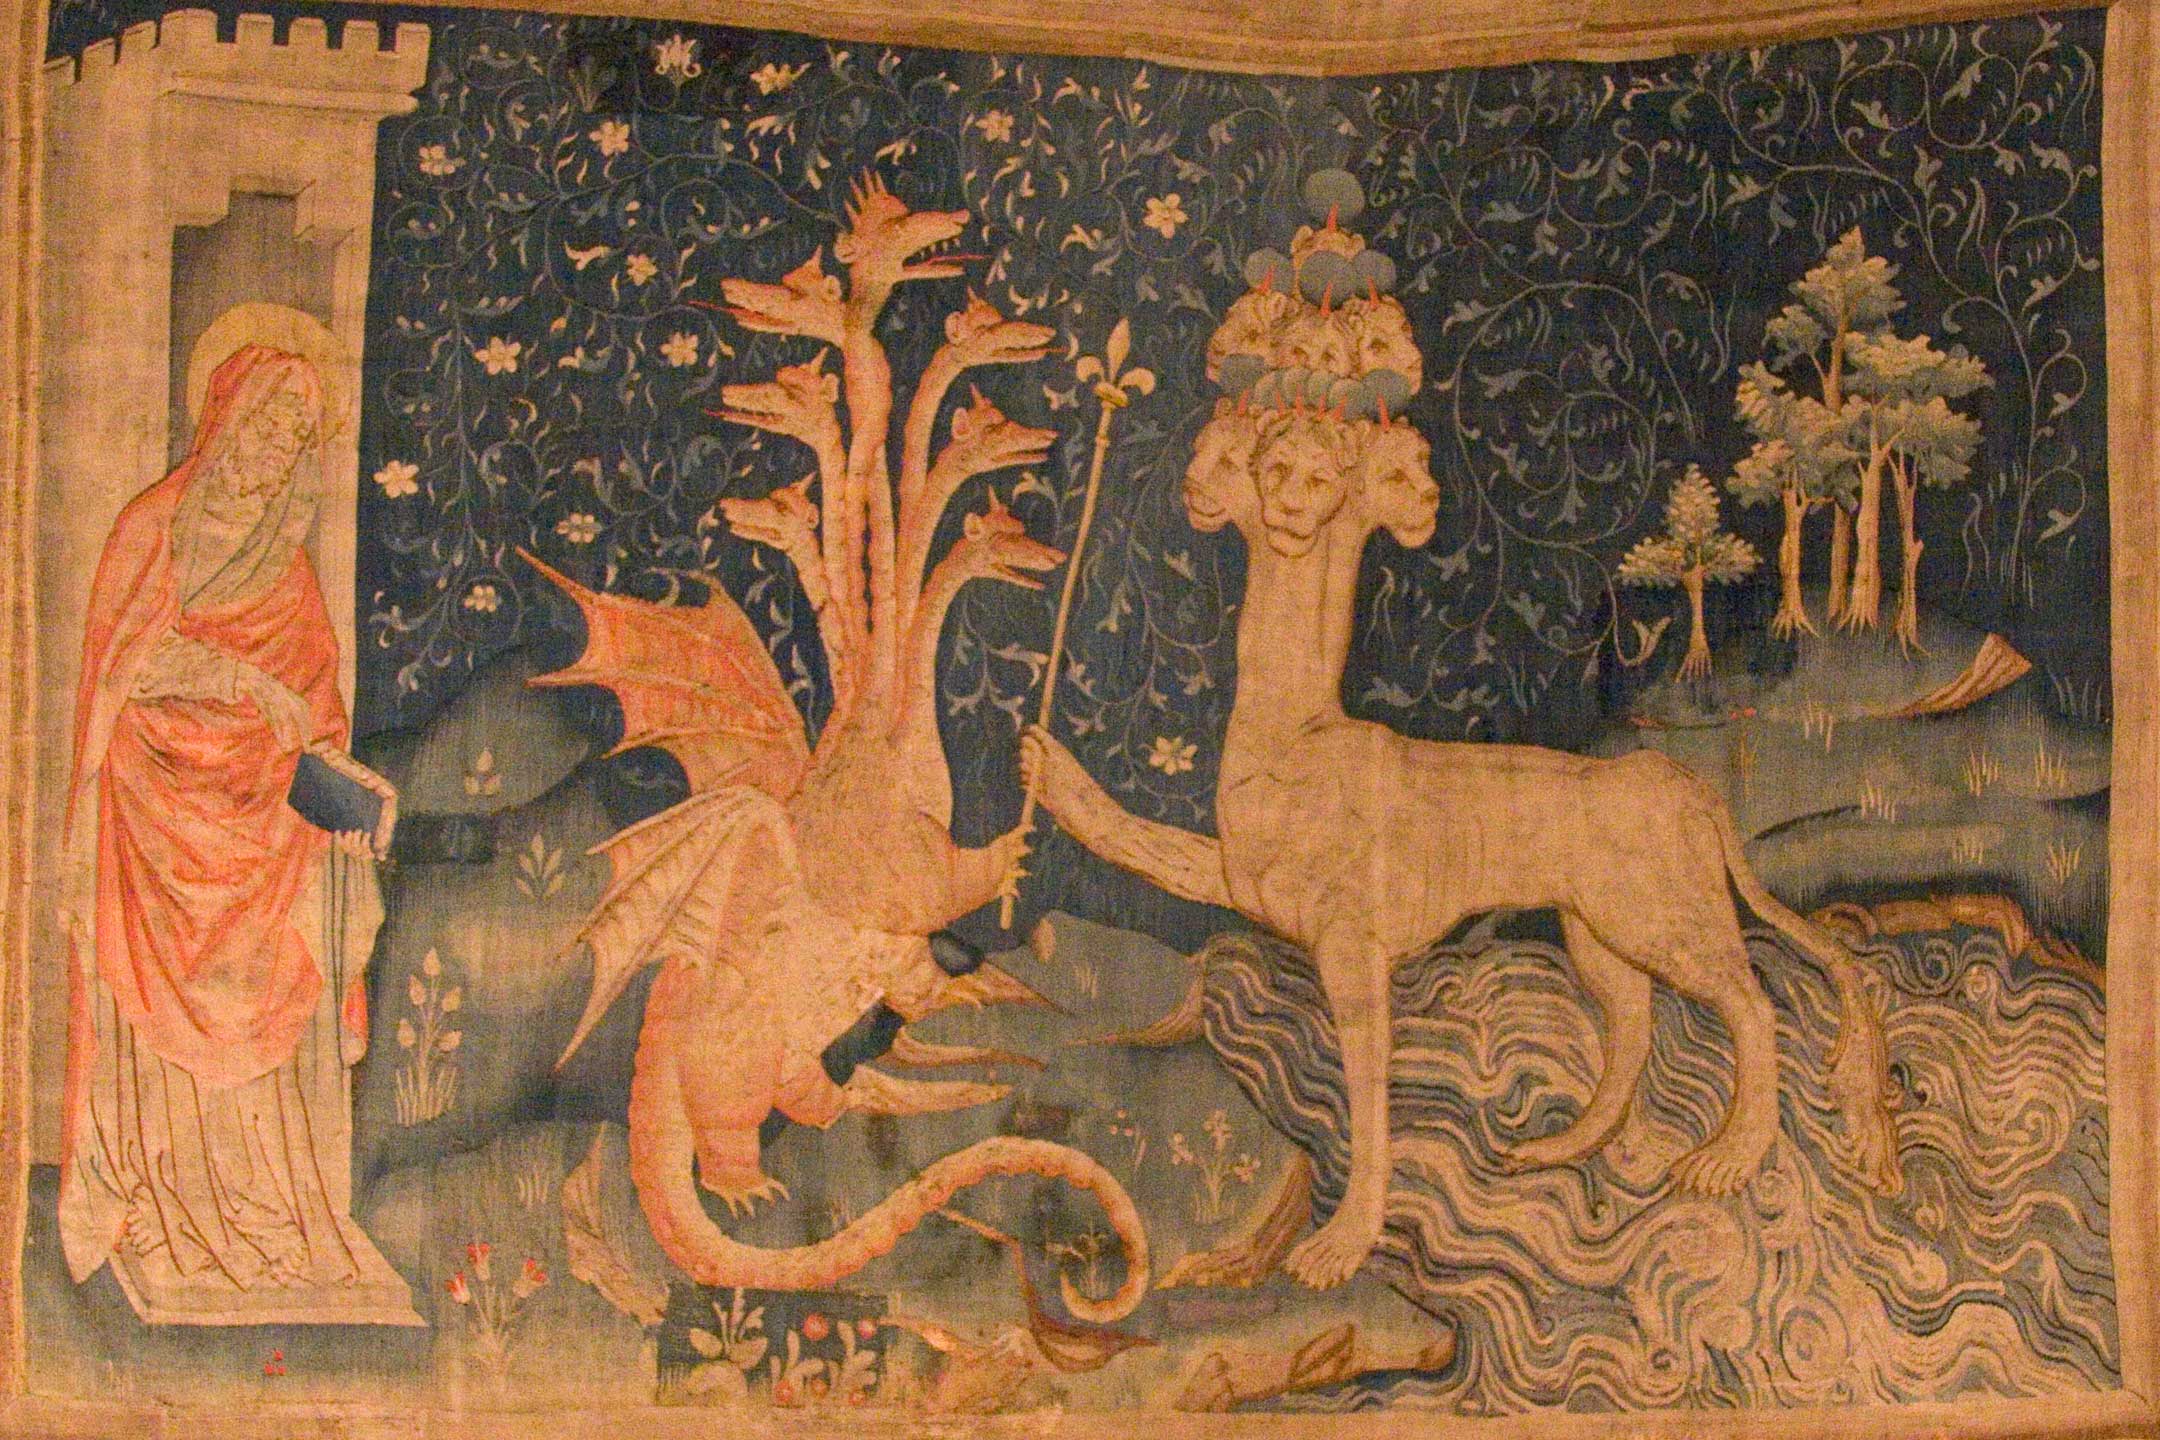 黙示録の獣、赤い龍 / The Beast of the Sea (Tapestry of the Apocalypse) - Wikipedia